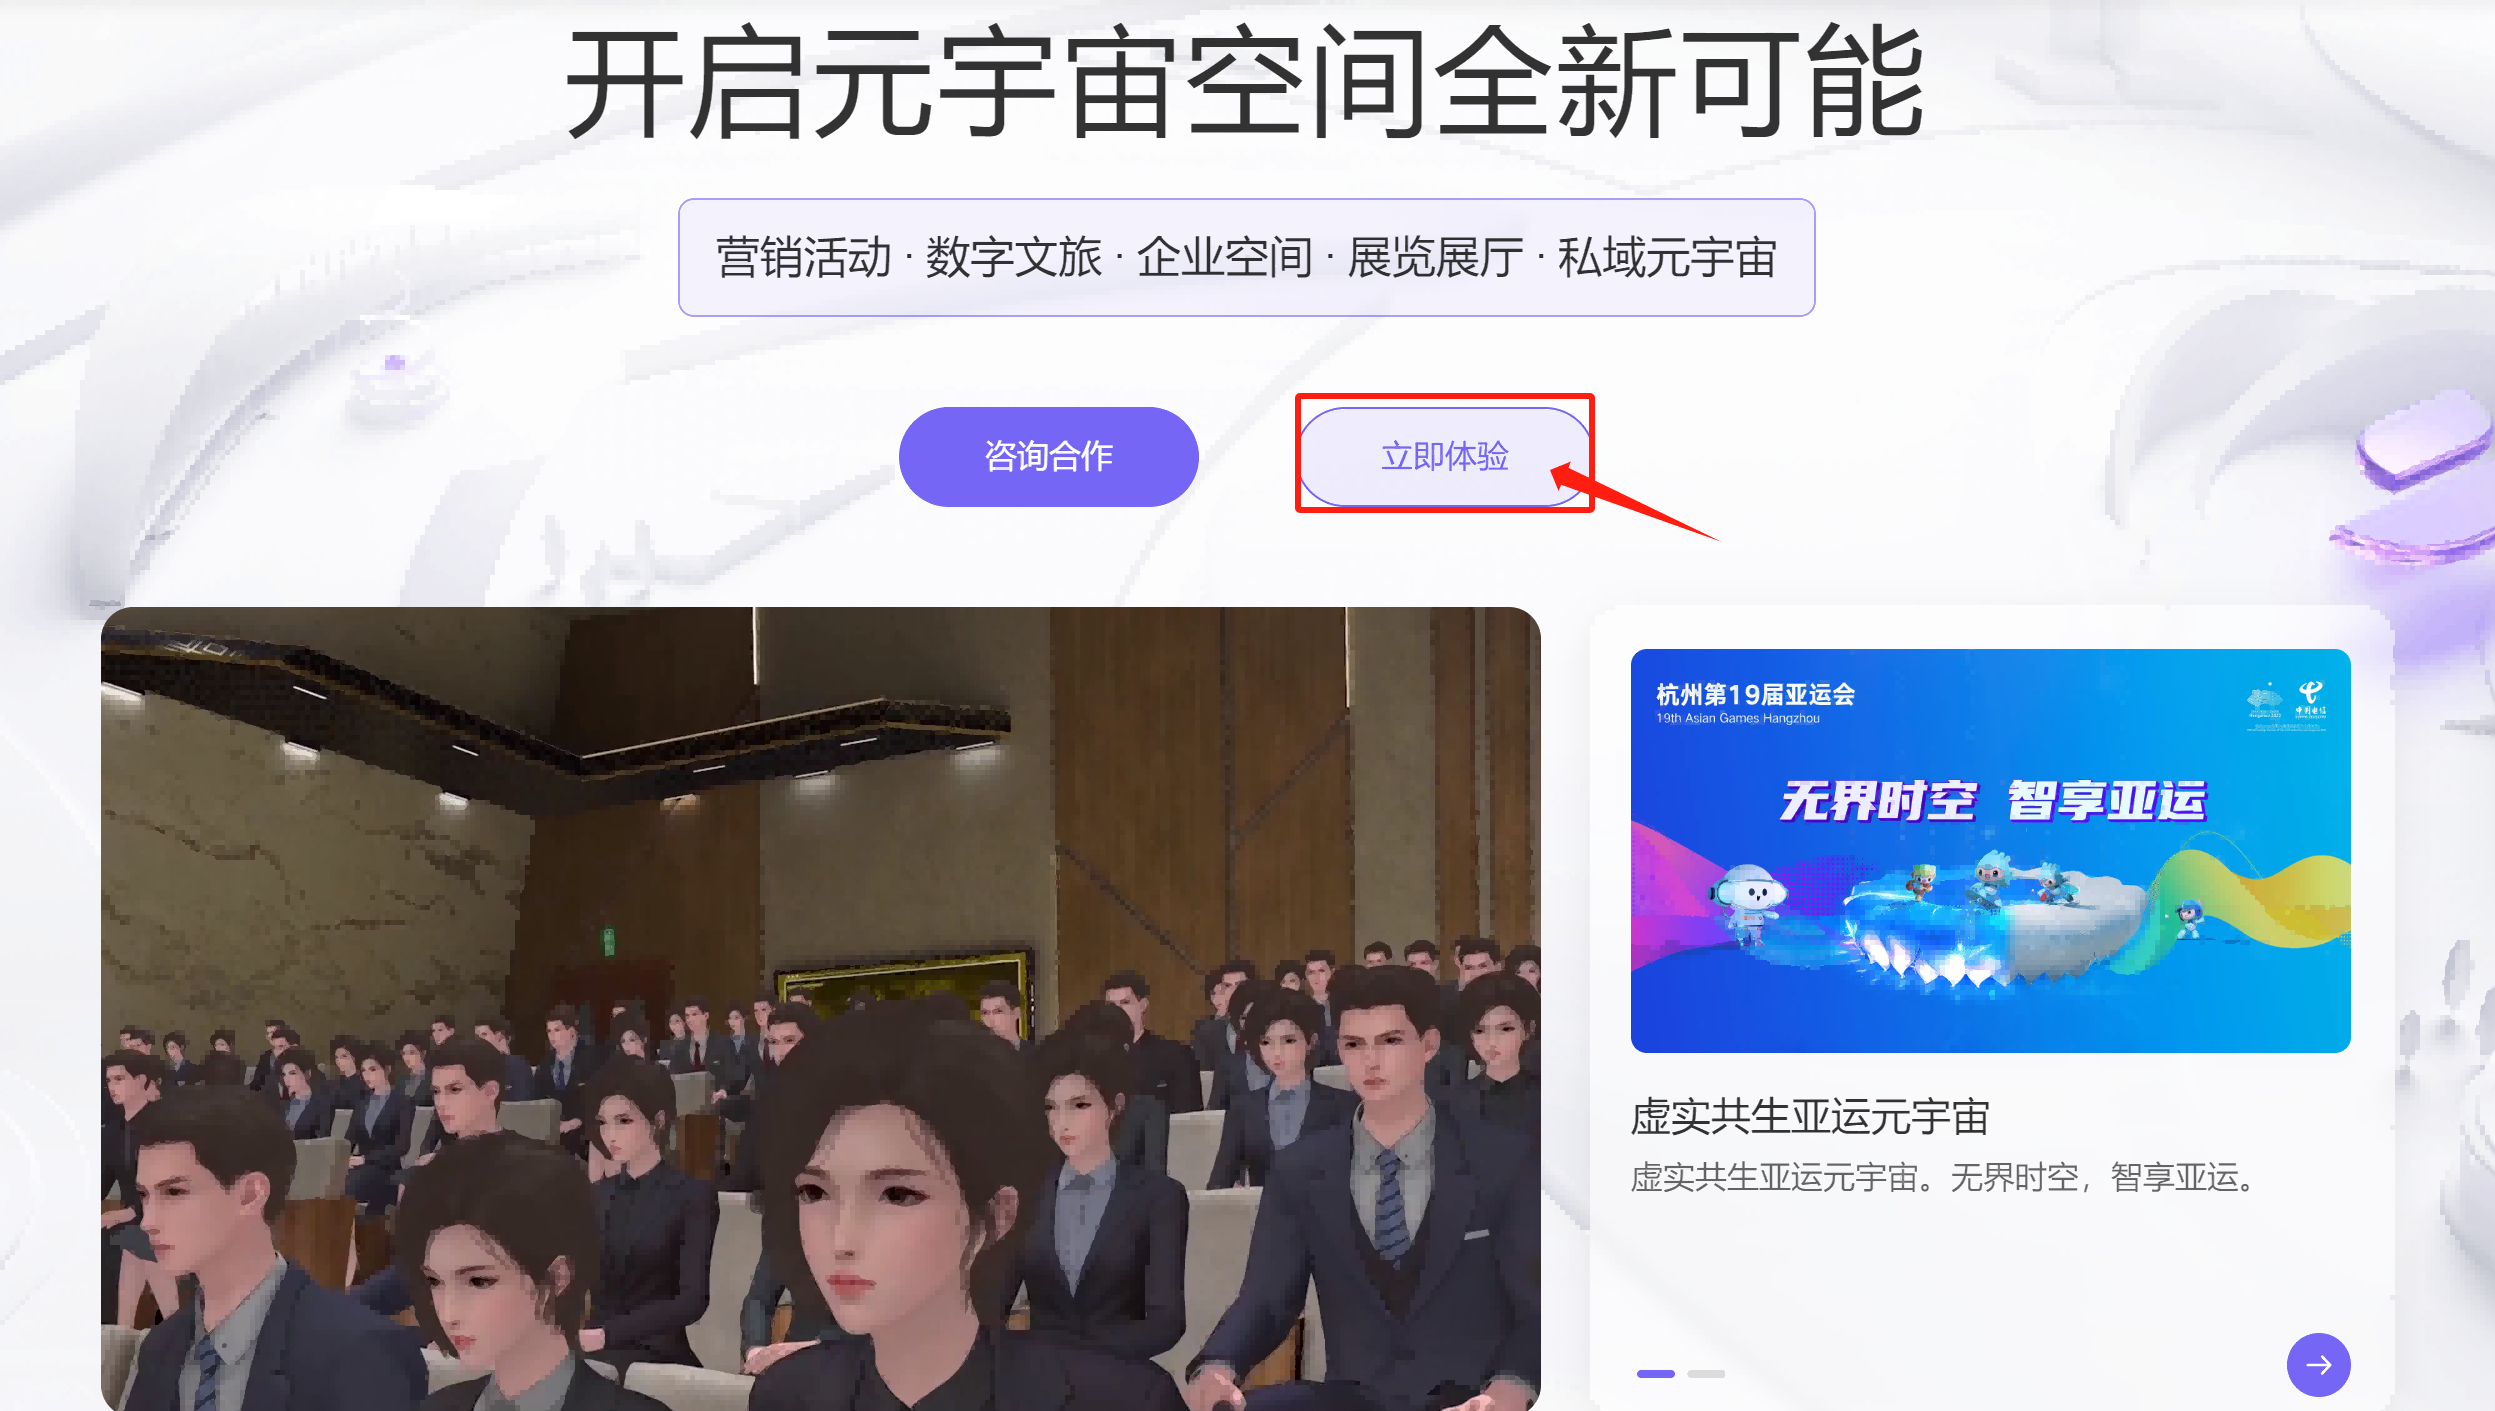 图片展示了一个虚拟会议或培训场景，多个三维动画风格的人物聚焦于前方，页面上方有中文指示文字和按钮。